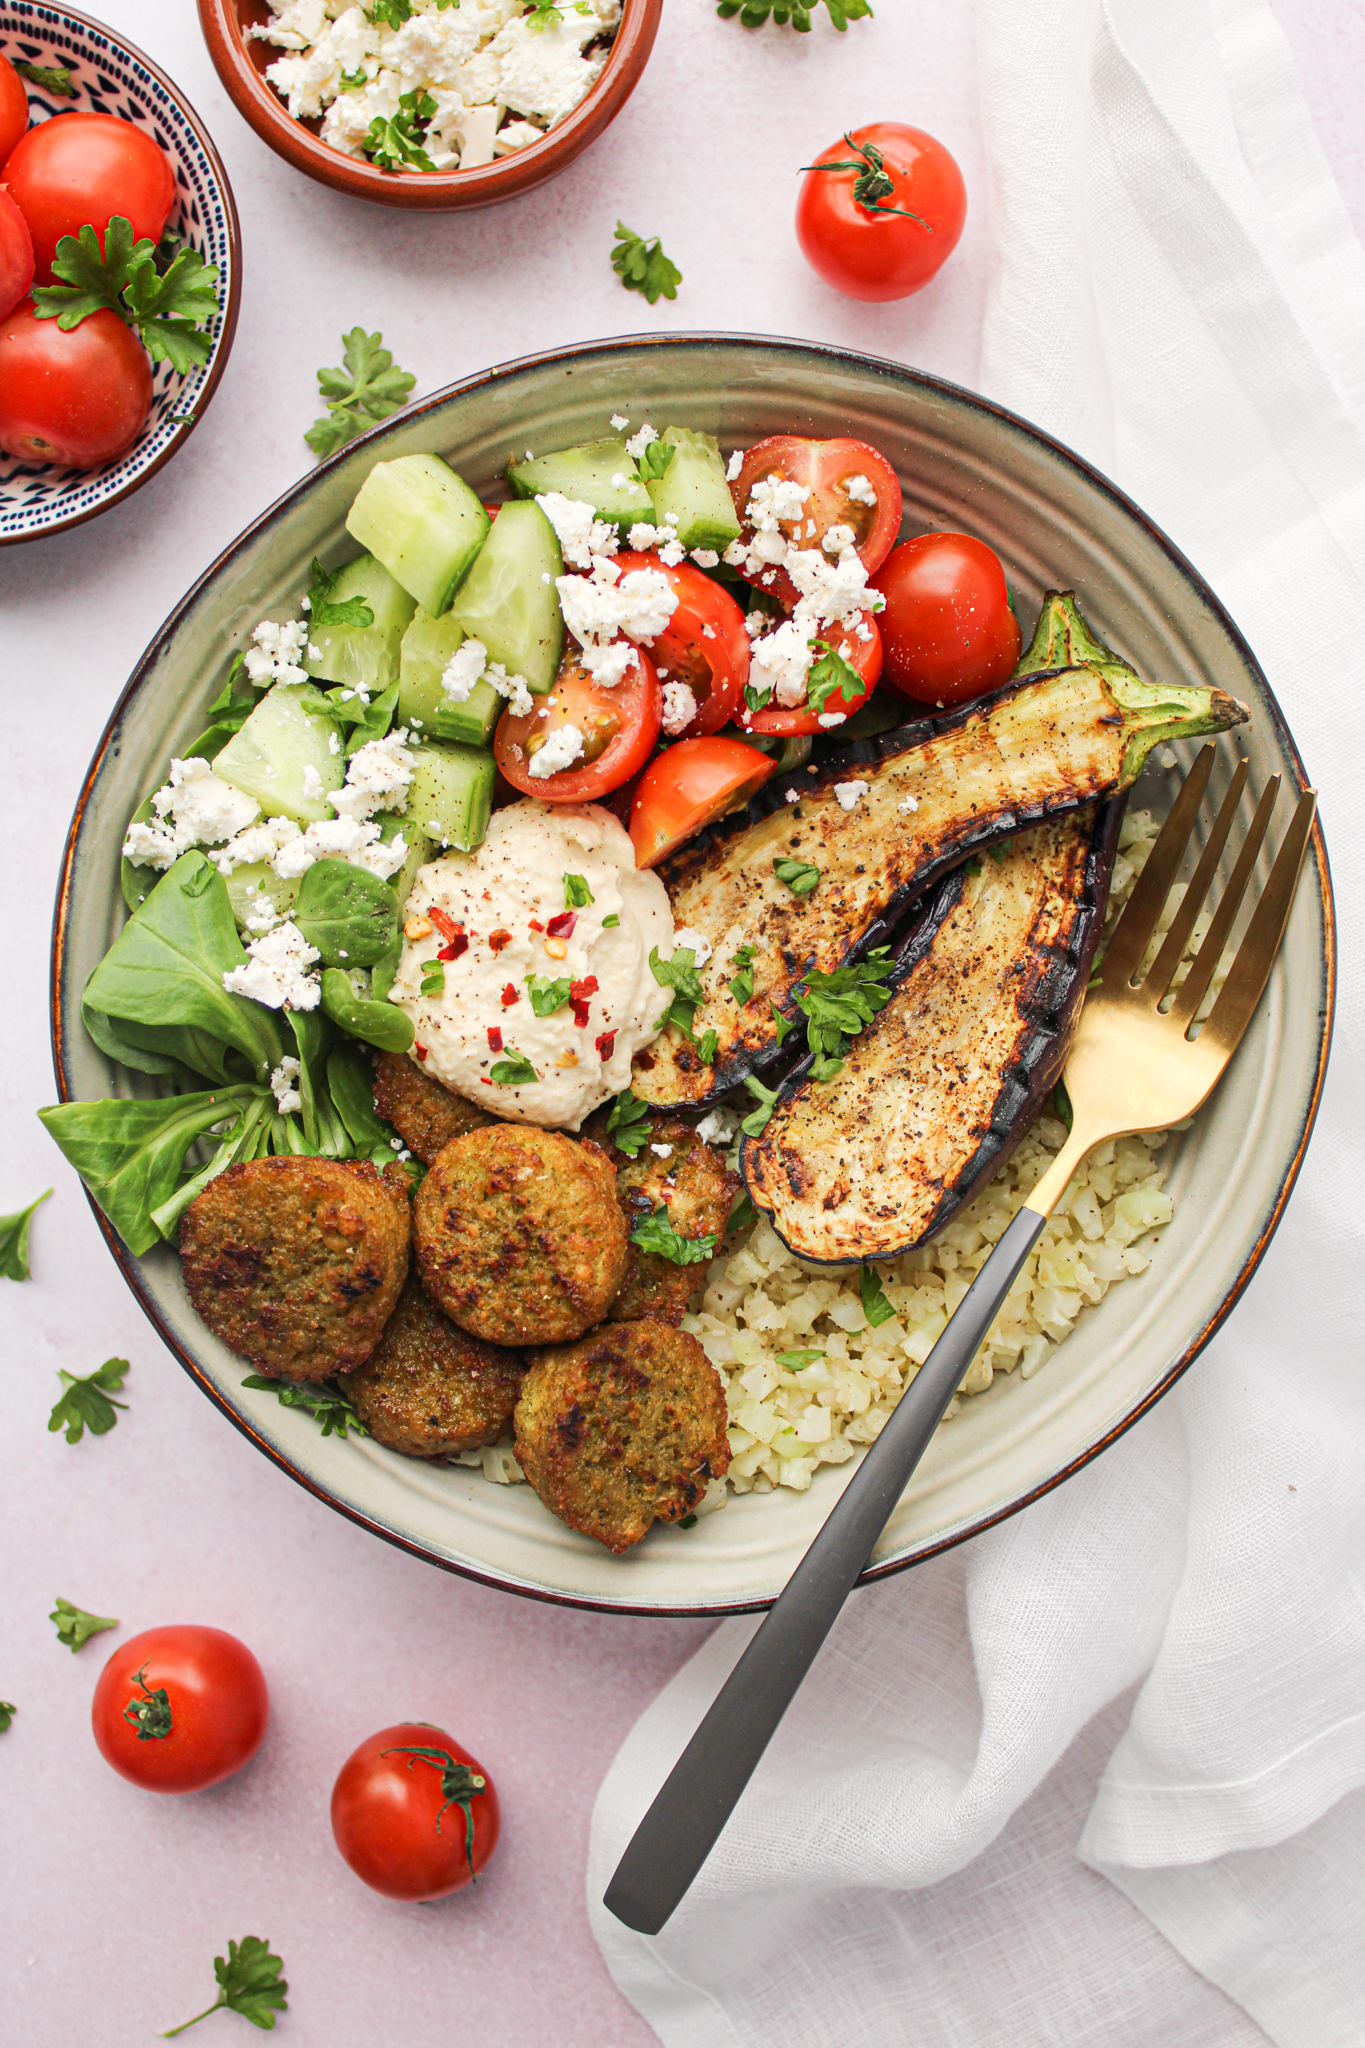 Gezonde Griekse salade met feta, tomaat, komkommer, falafel, bloemkoolrijst, aubergine en veldsla. Gezond, makkelijk, snel en lekker vegetarisch